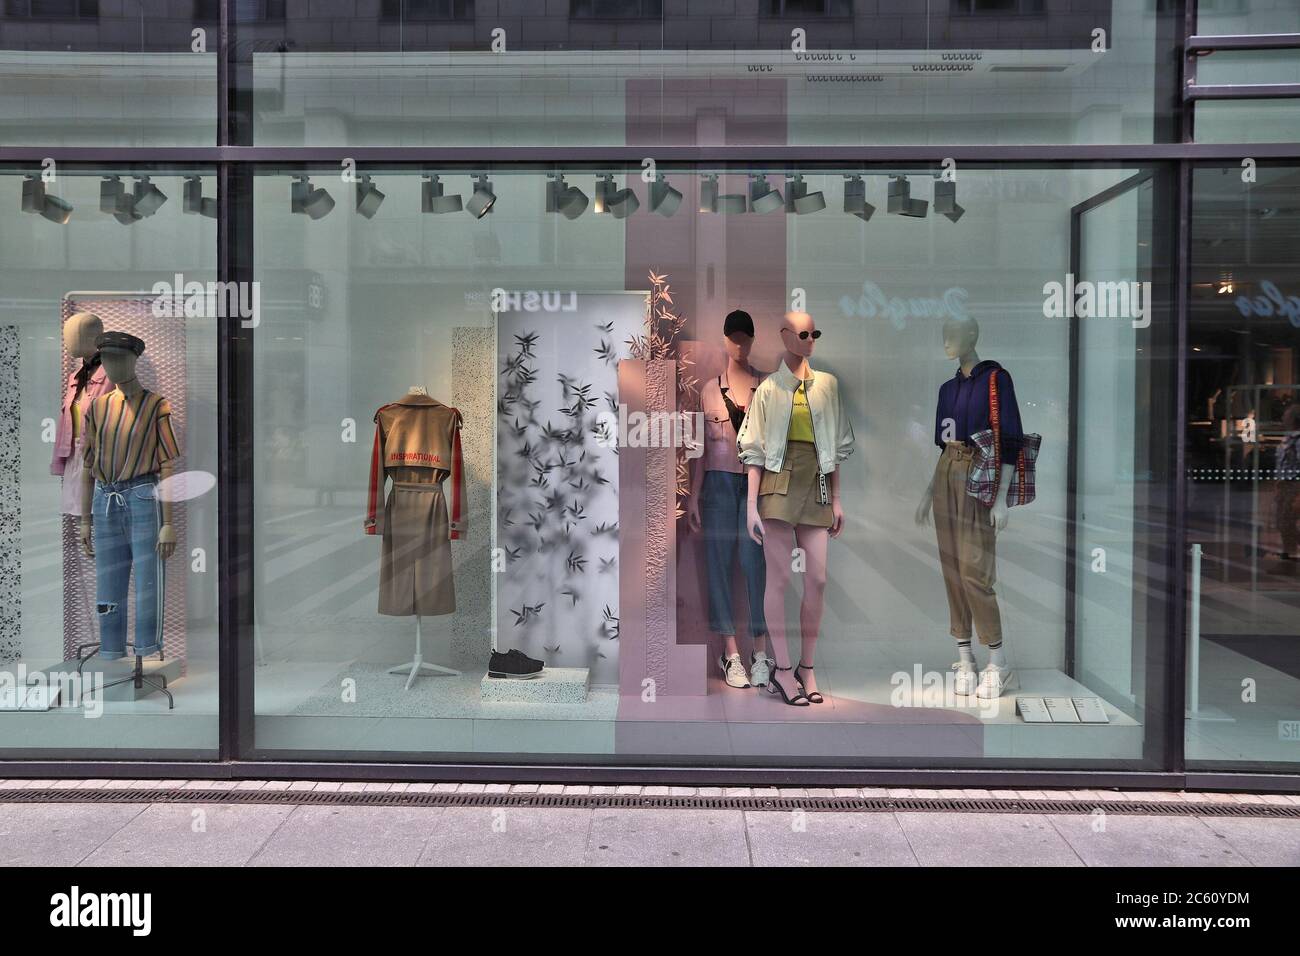 DRESDEN, ALEMANIA - 10 DE MAYO de 2018: Escaparate de la tienda ropa Bershka en Dresden, Alemania. La Marca Bershka forma parte del grupo moda Fotografía de stock - Alamy